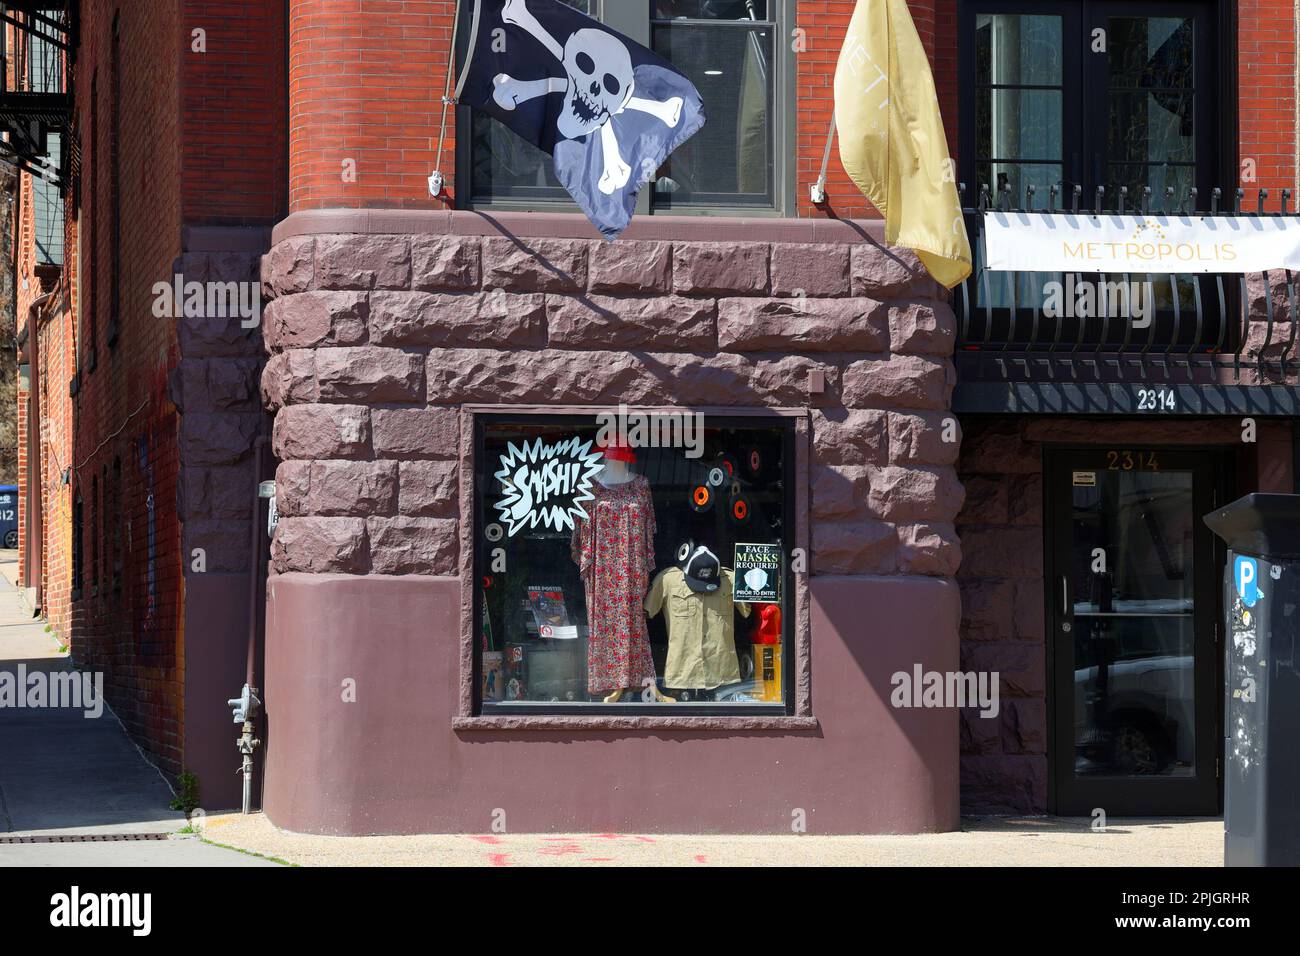 Smash Records, 2314 18th St NW, Washington DC. Photo en façade d'un punk rock et d'un magasin de disques d'artistes locaux dans le quartier Adams Morgan. Banque D'Images